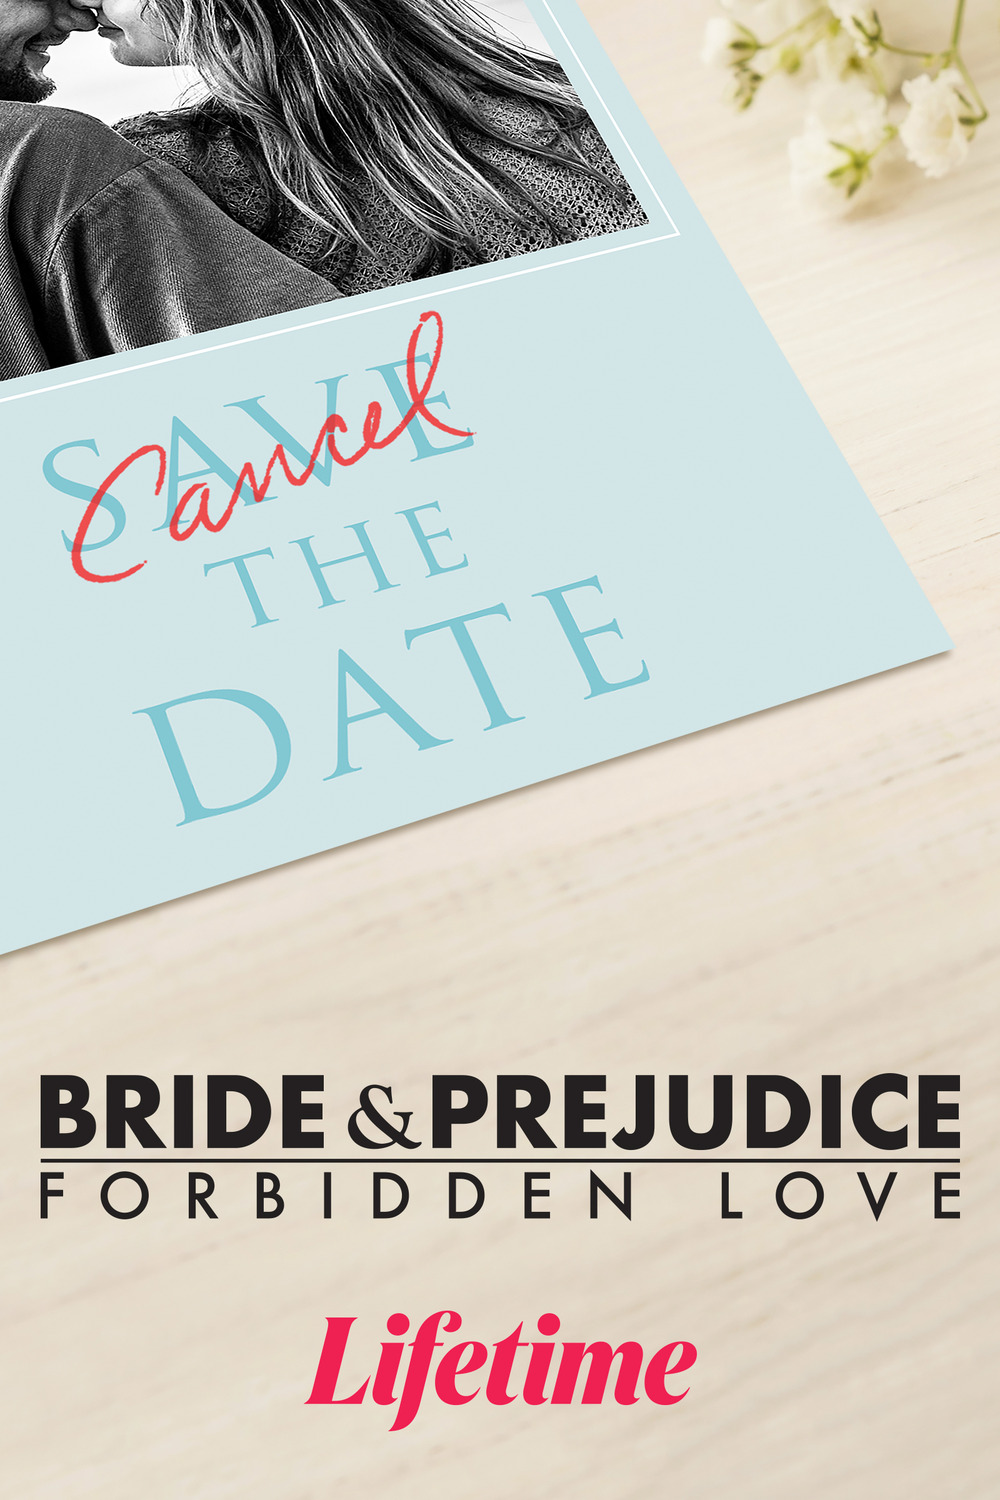 Extra Large TV Poster Image for Bride & Prejudice: Forbidden Love 